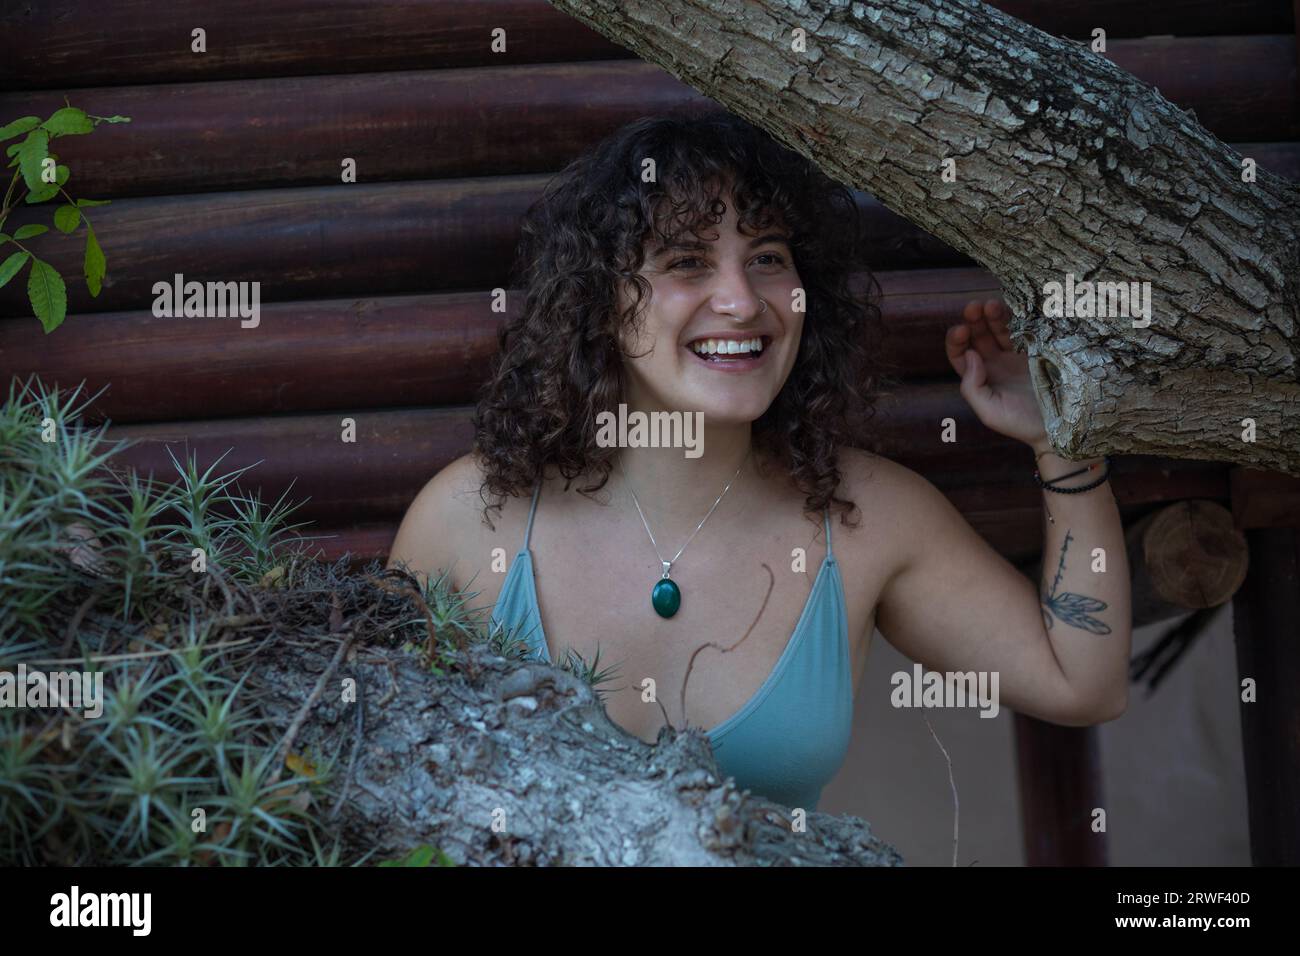 Au milieu des branches d'arbres, une jeune femme sourit joyeusement Banque D'Images